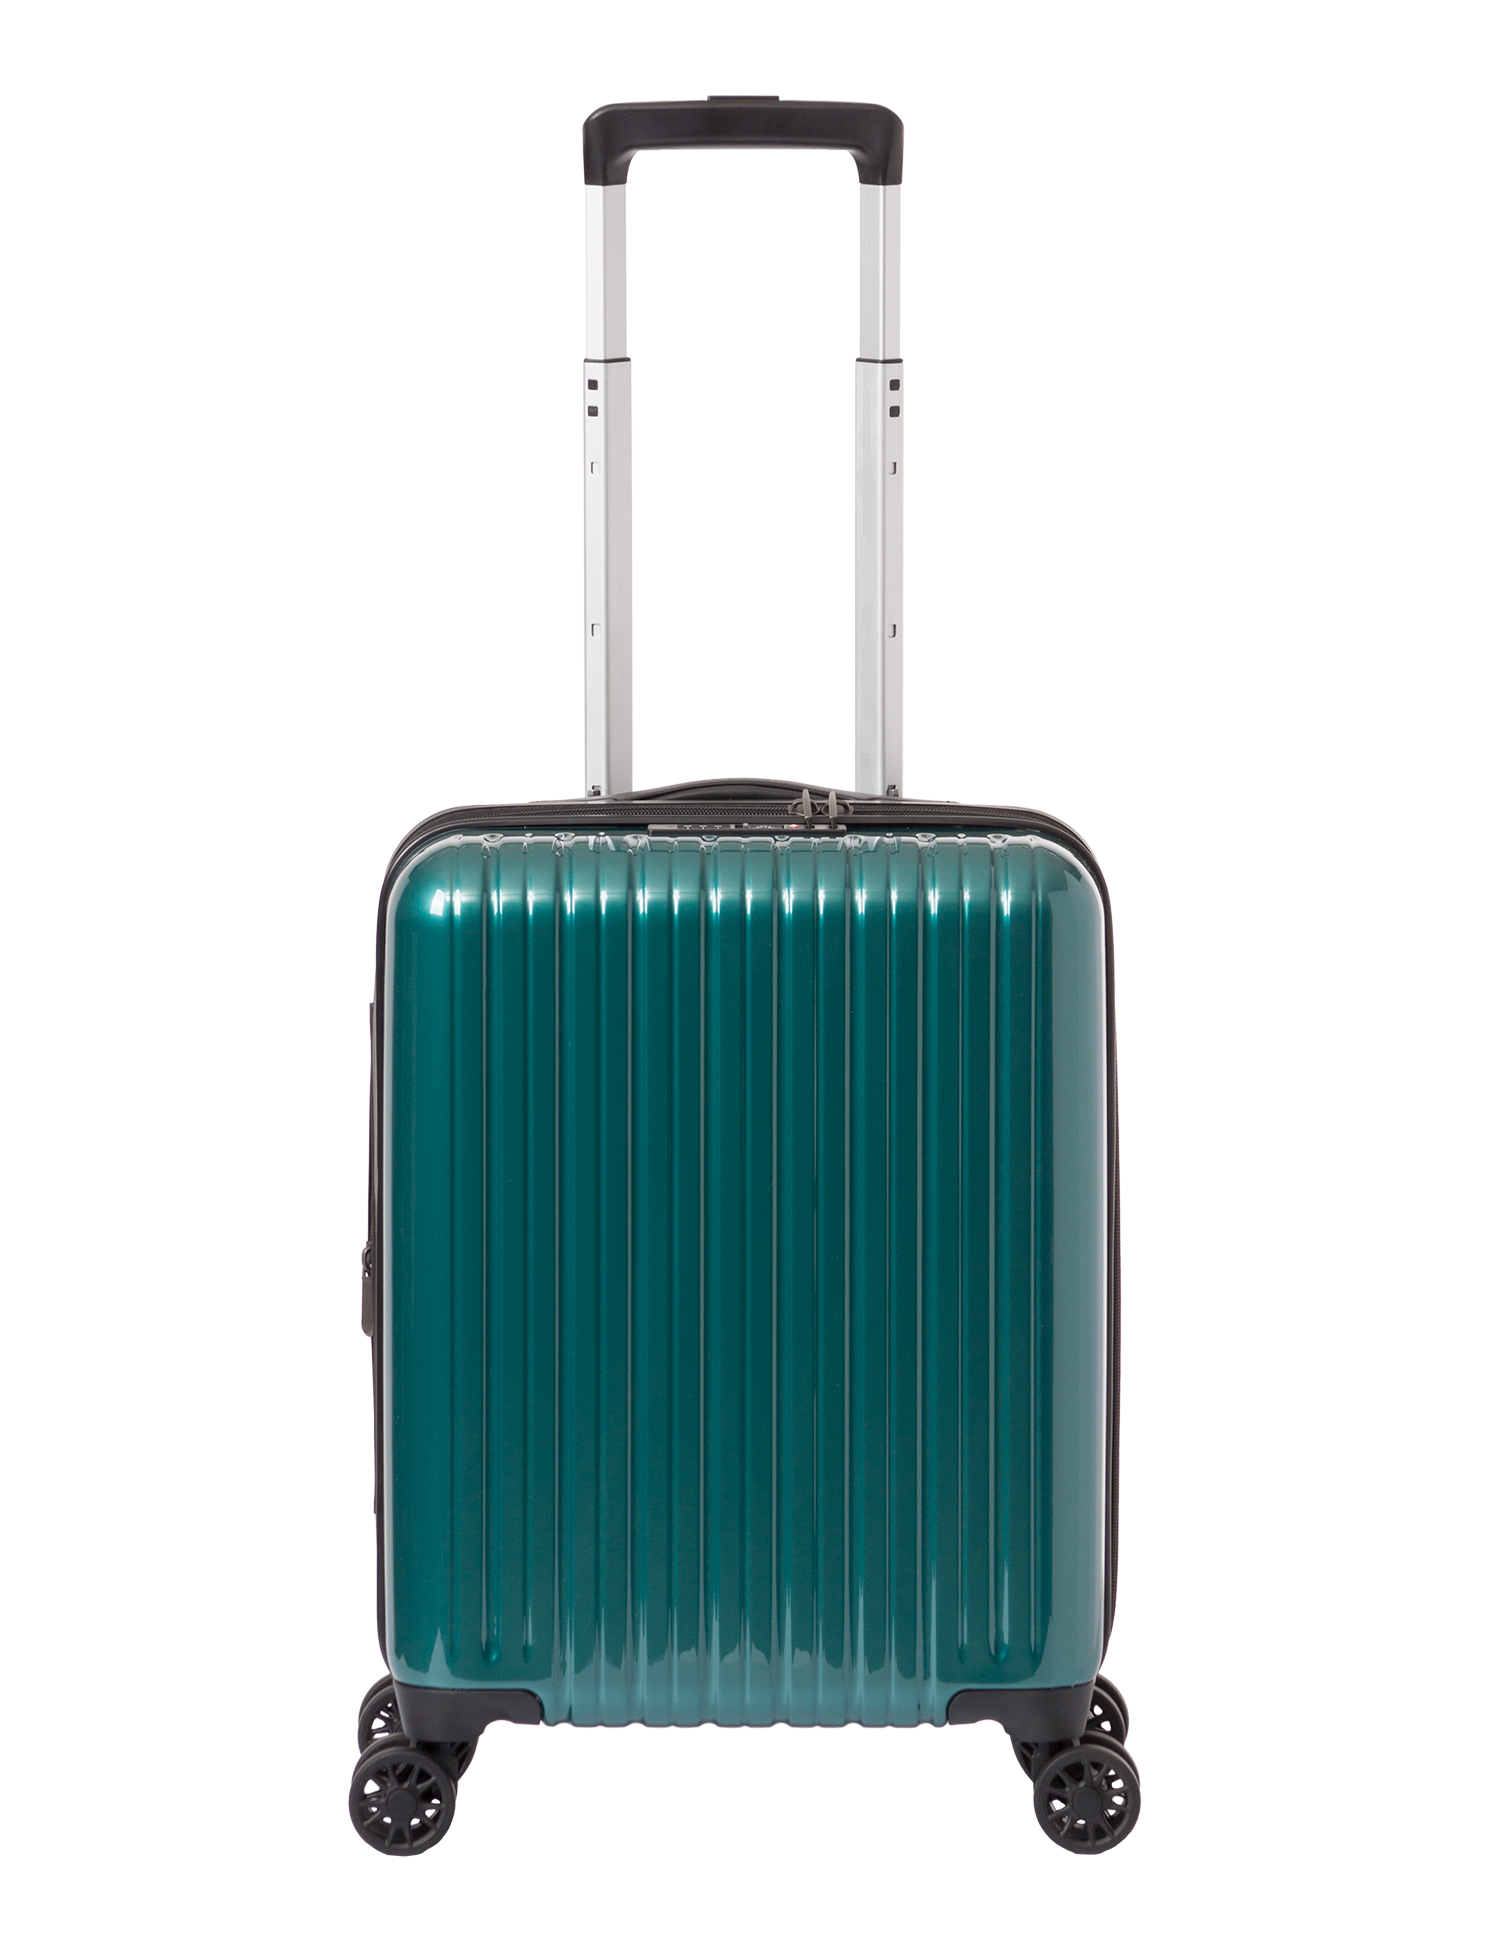 アジア・ラゲージのスーツケース ALI-9327-17W | アジア・ラゲージ 